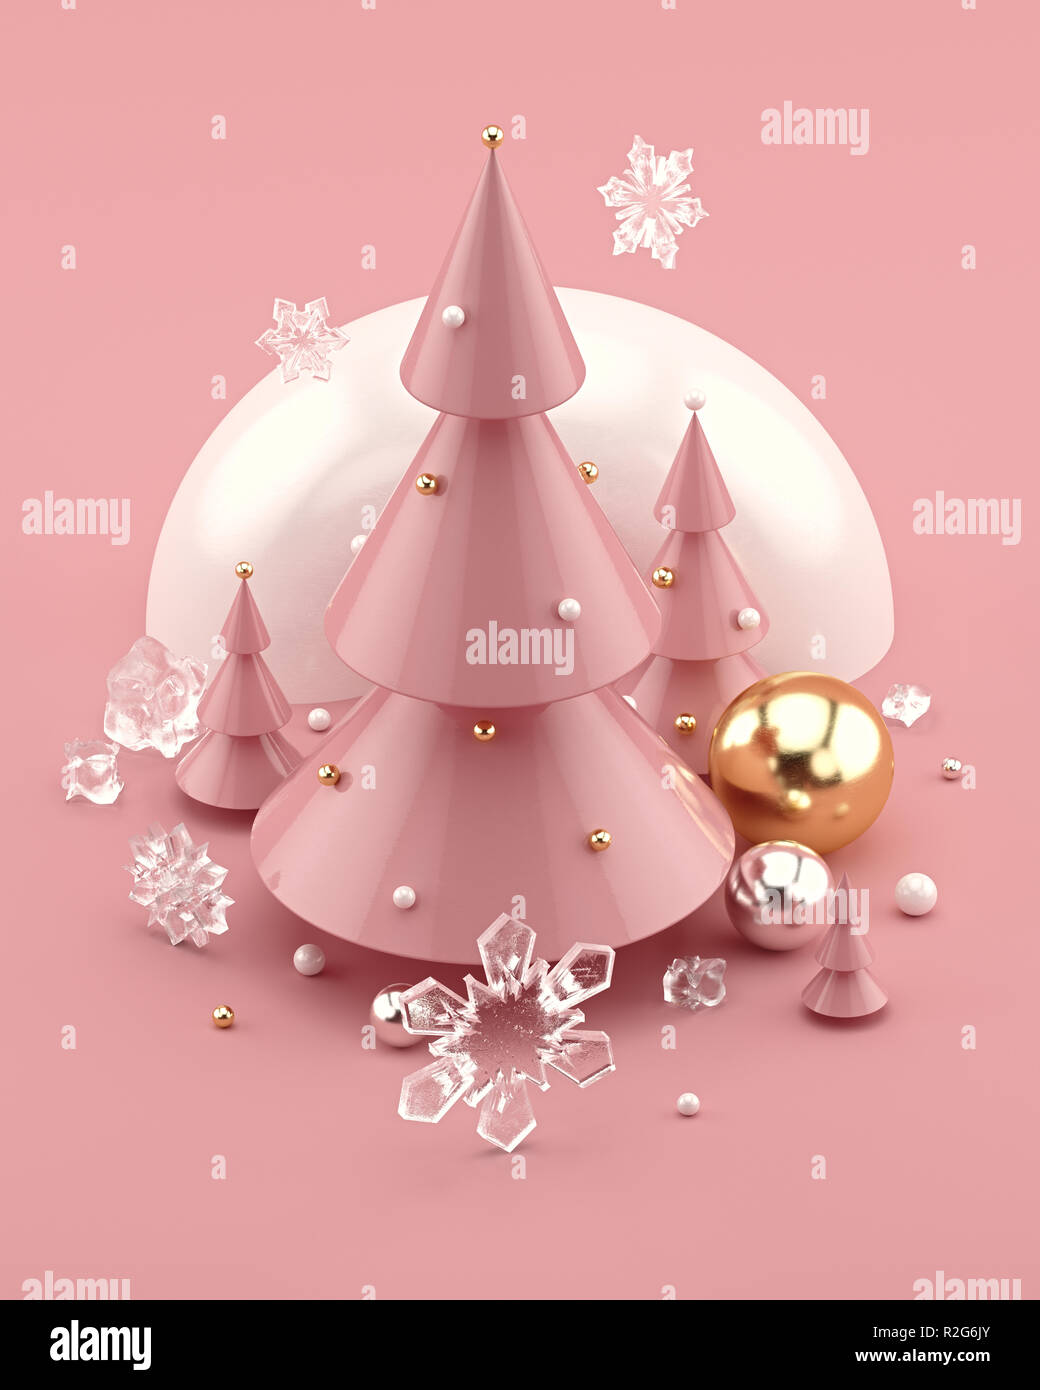 Albero Di Natale Rosa Gold.Rose Gold 3d Illustrazione Decorate Con Alberi Di Natale E I Fiocchi Di Neve Foto Stock Alamy